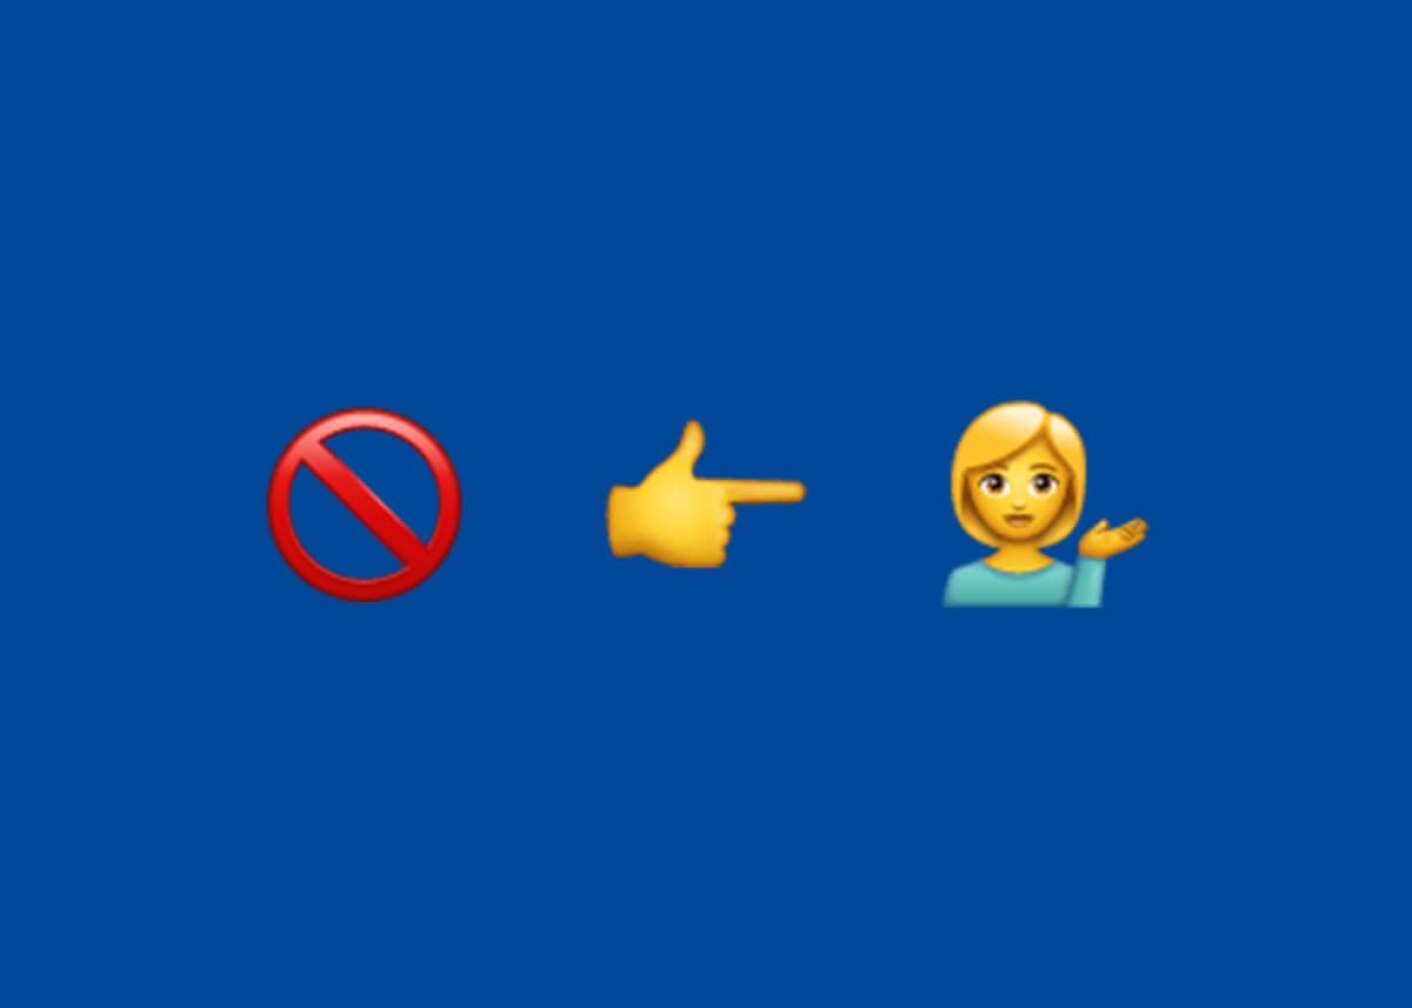 Emoji Verboten, Zeigefinger und Frau